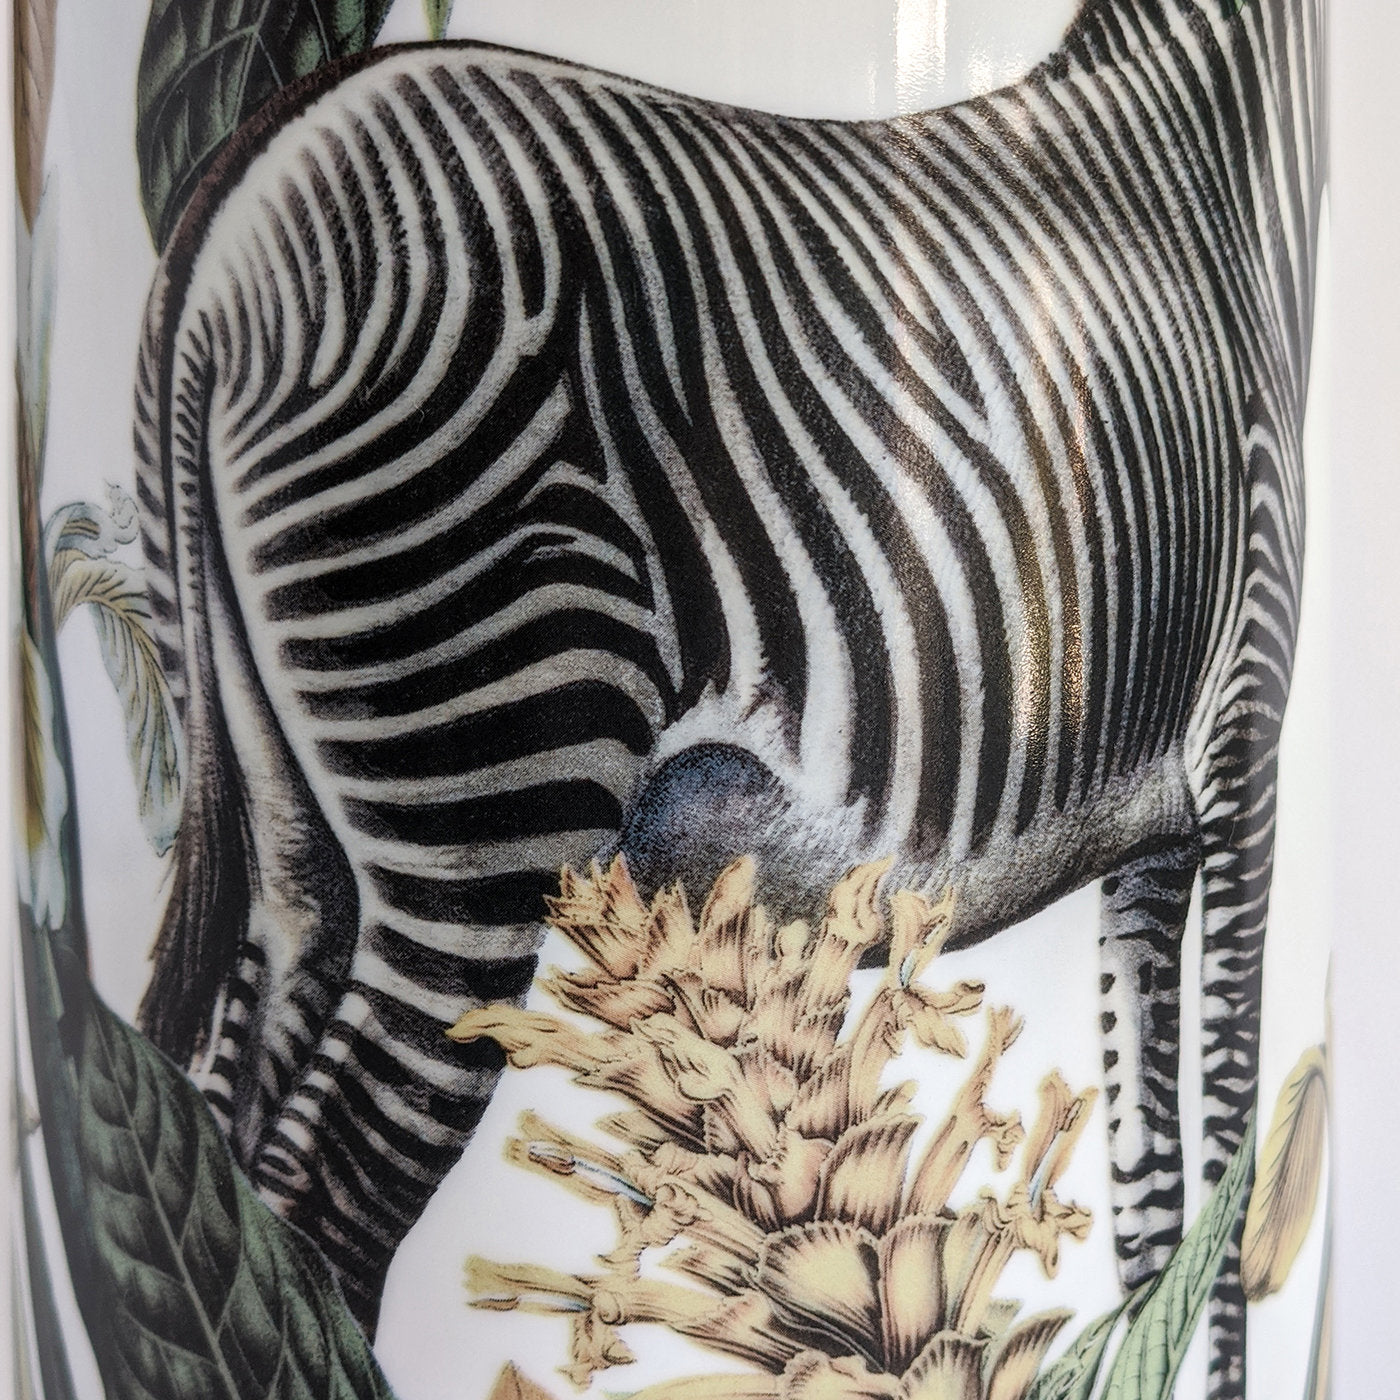 Animalia Porzellan Zylindrische Vase mit Zebra - Alternative Ansicht 4